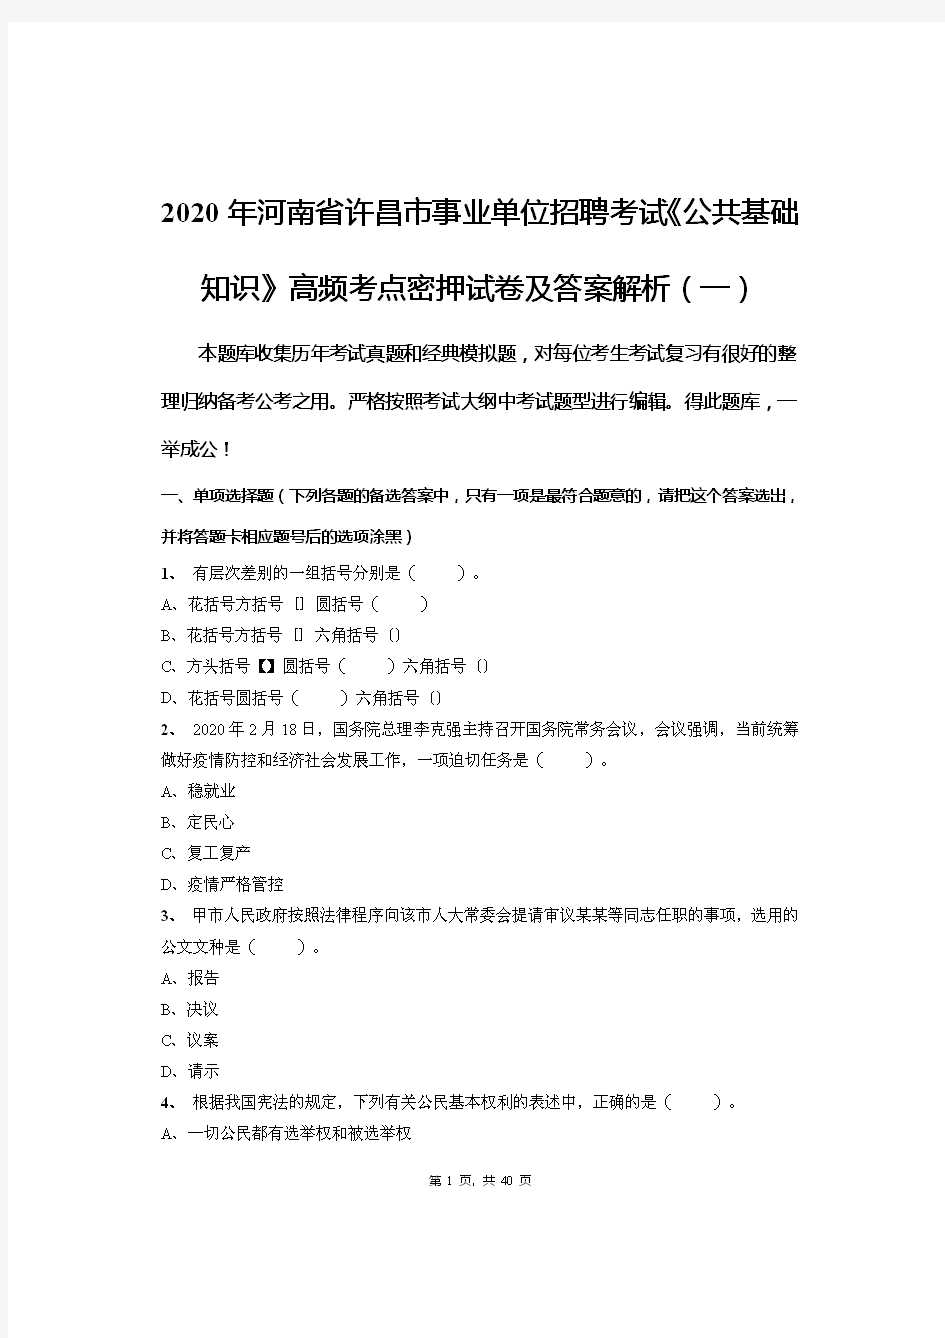 2020年河南省许昌市事业单位招聘考试《公共基础知识》高频考点密押试卷及答案解析(一)